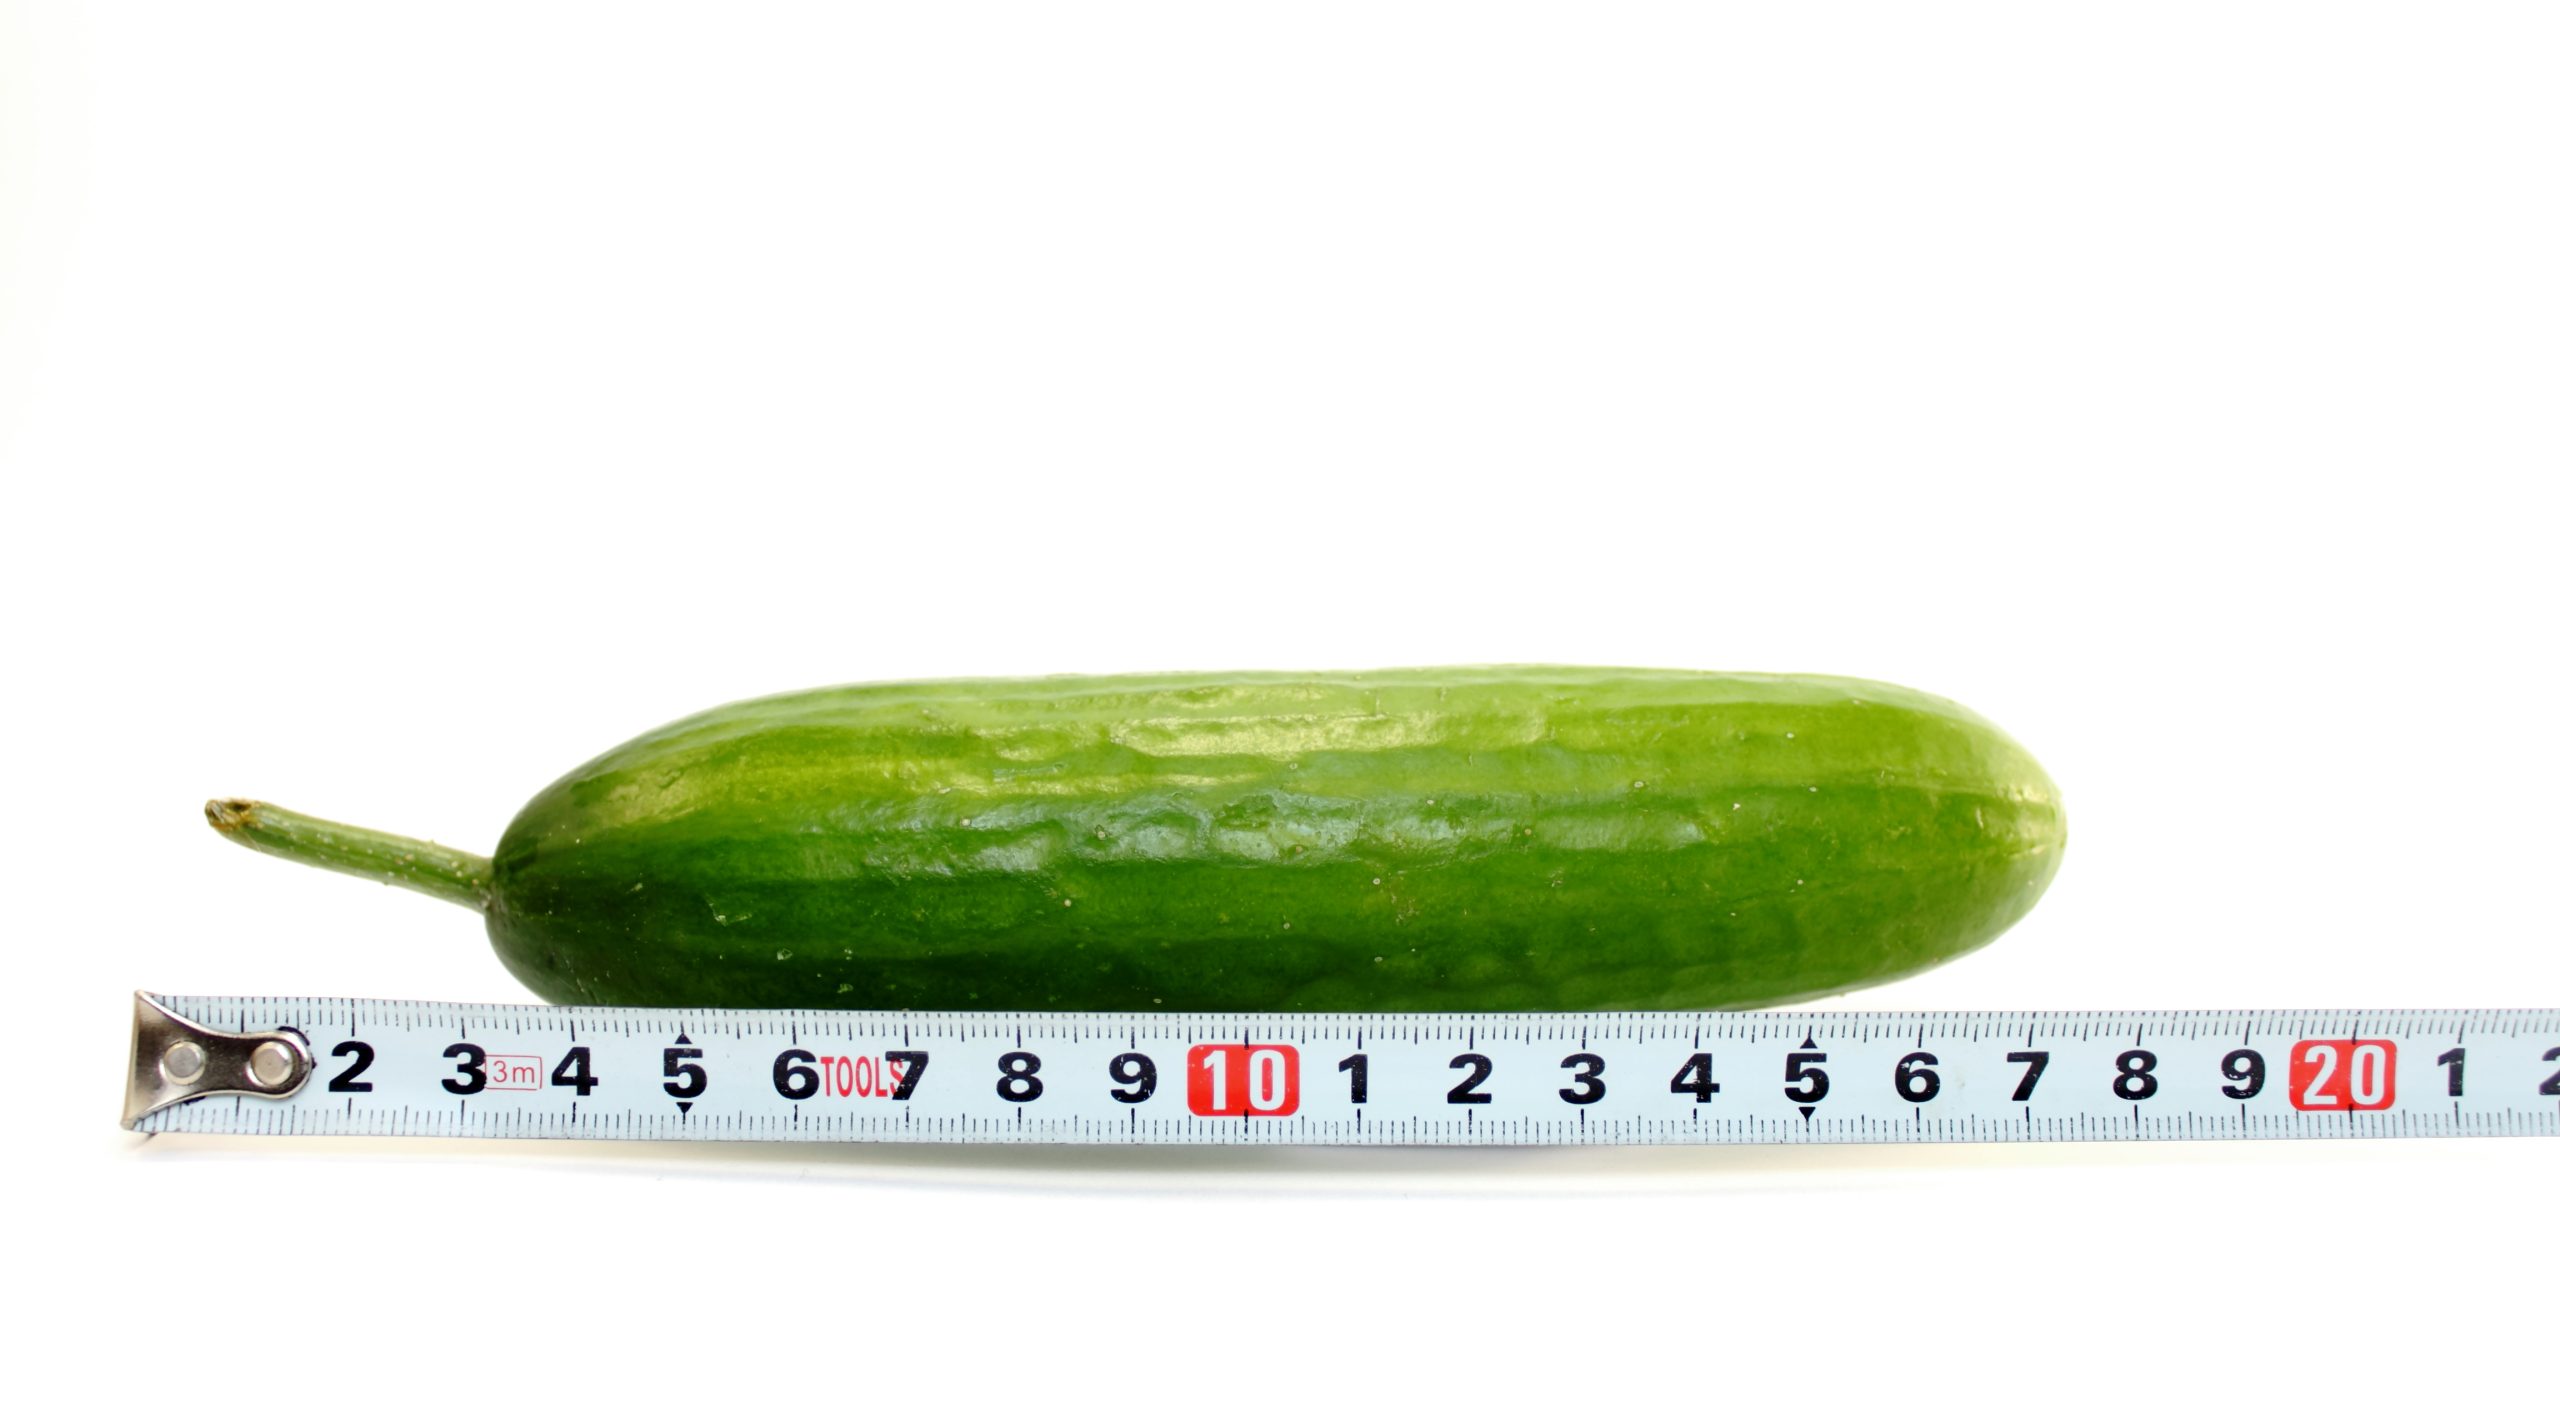 Penis Boyu ölçümü için cetvel veya metre kullanabilirsiniz. 